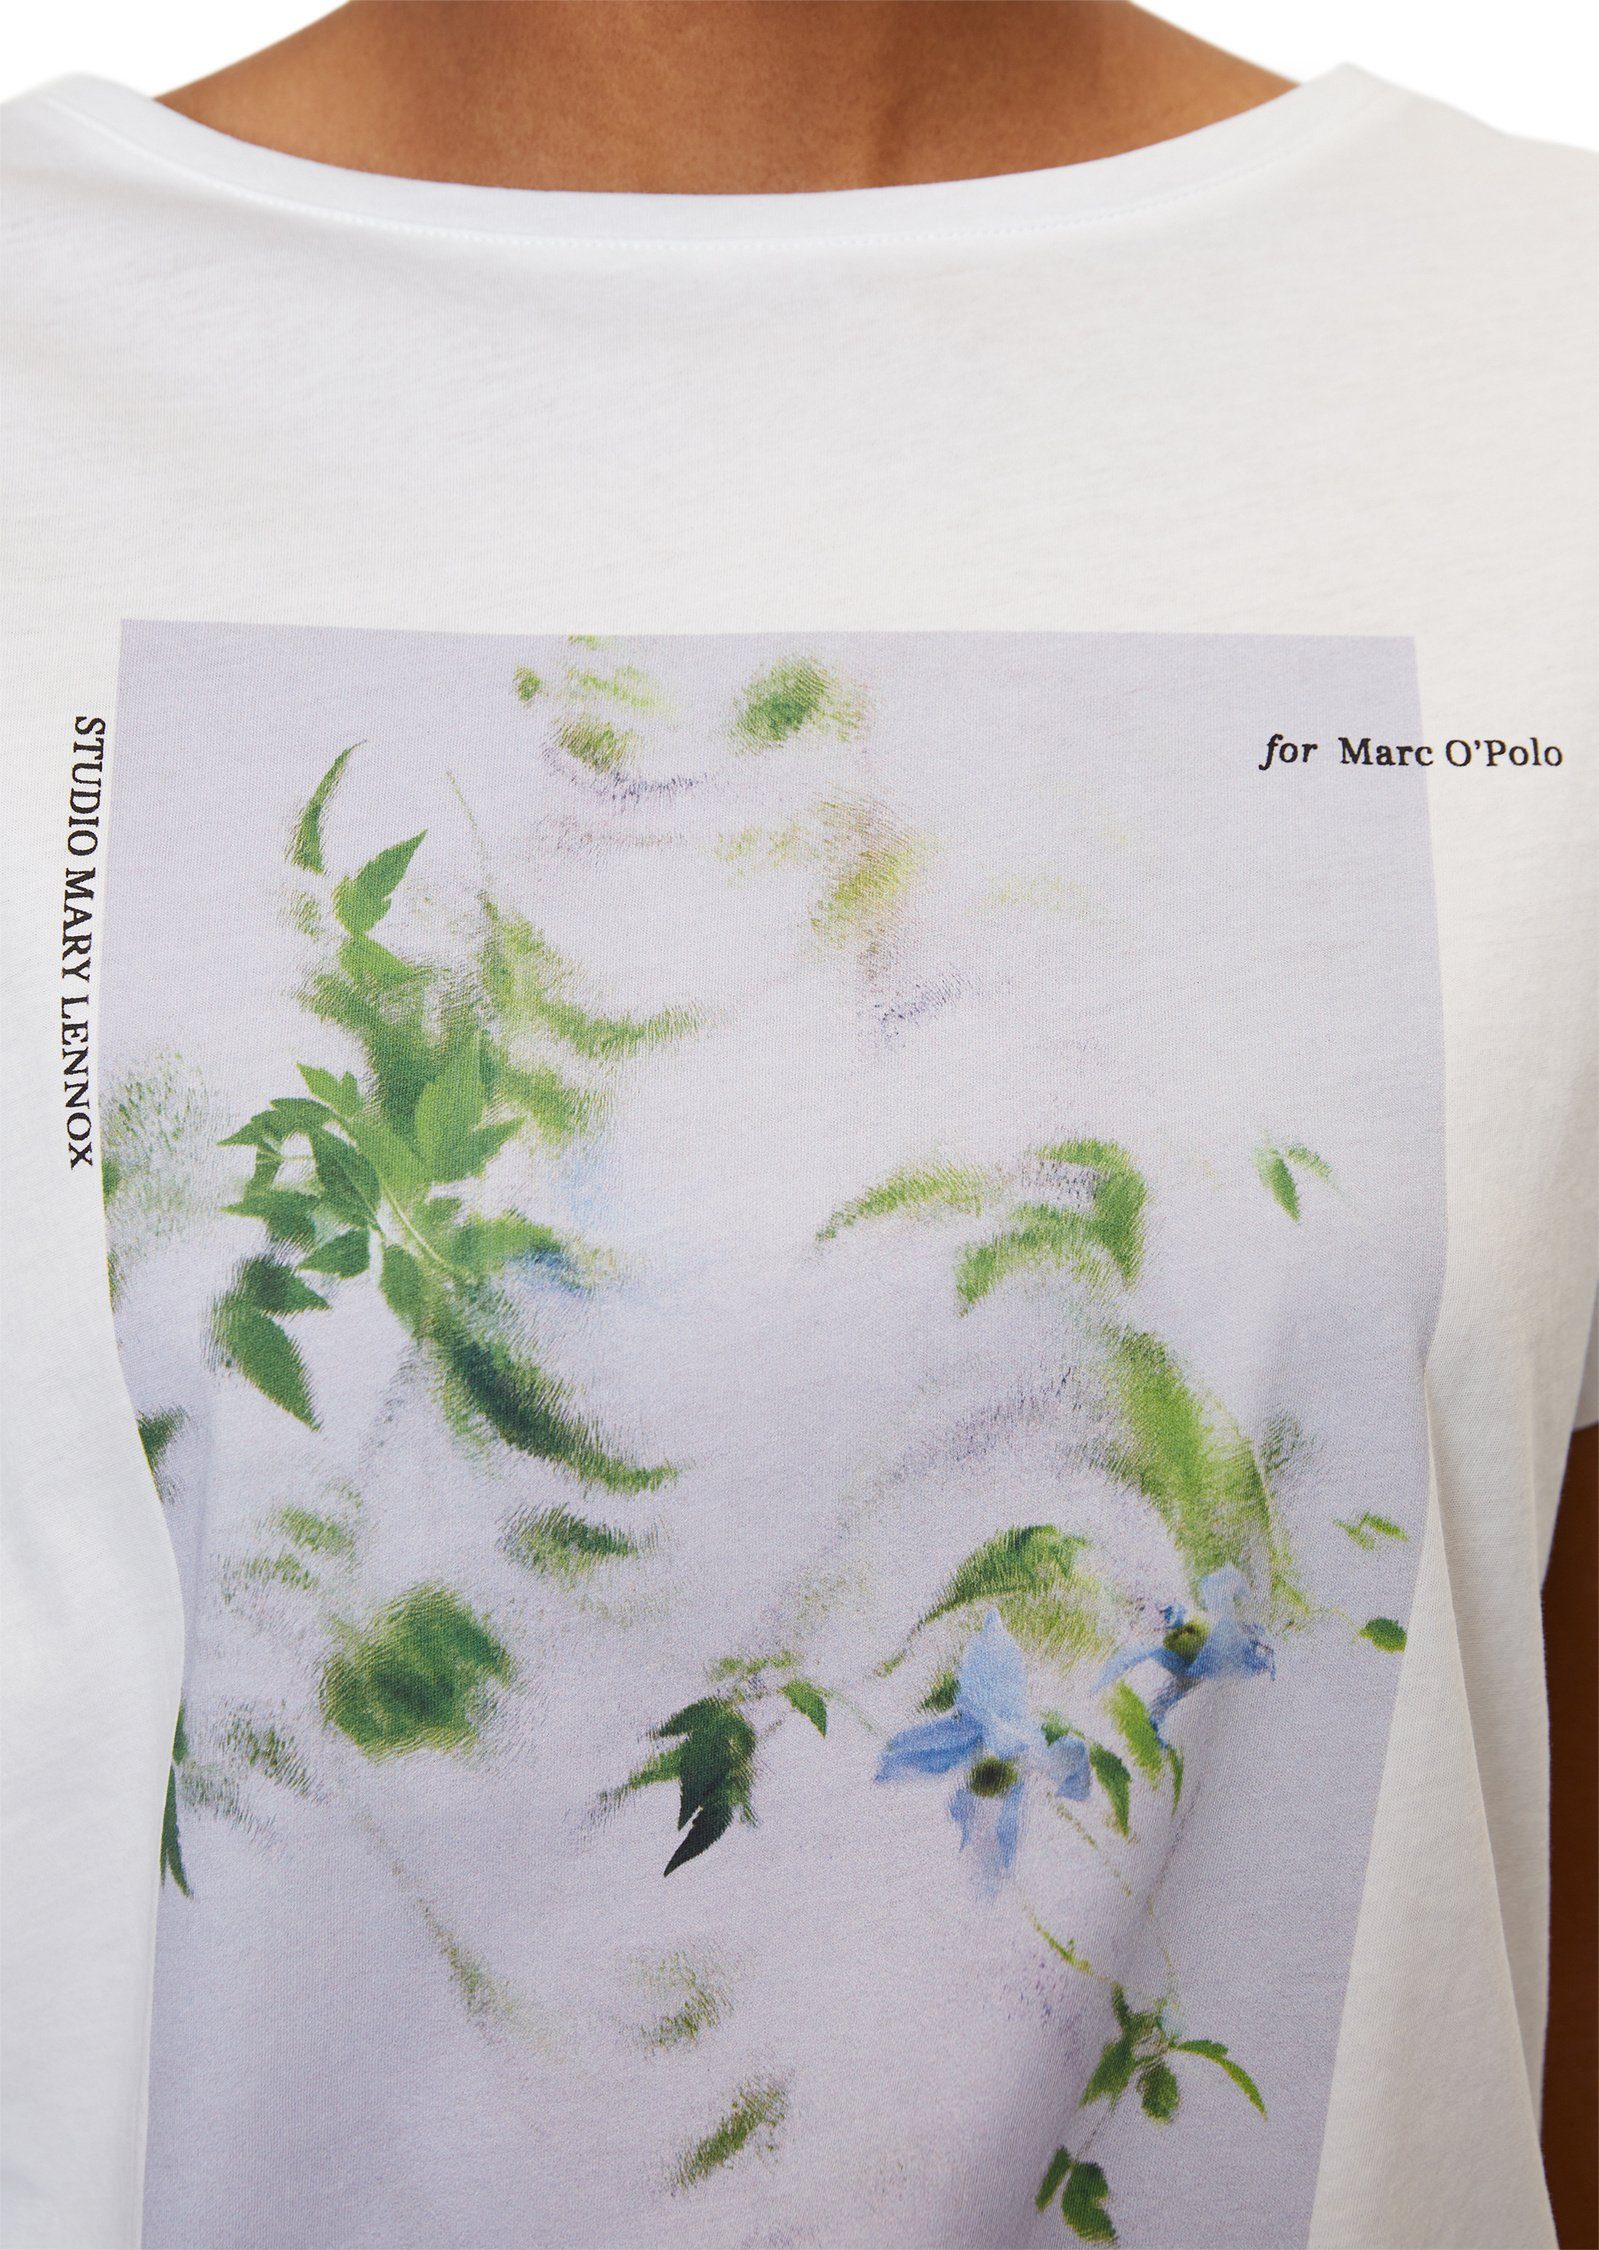 Marc O'Polo T-Shirt mit weiß floralem Foto-Print